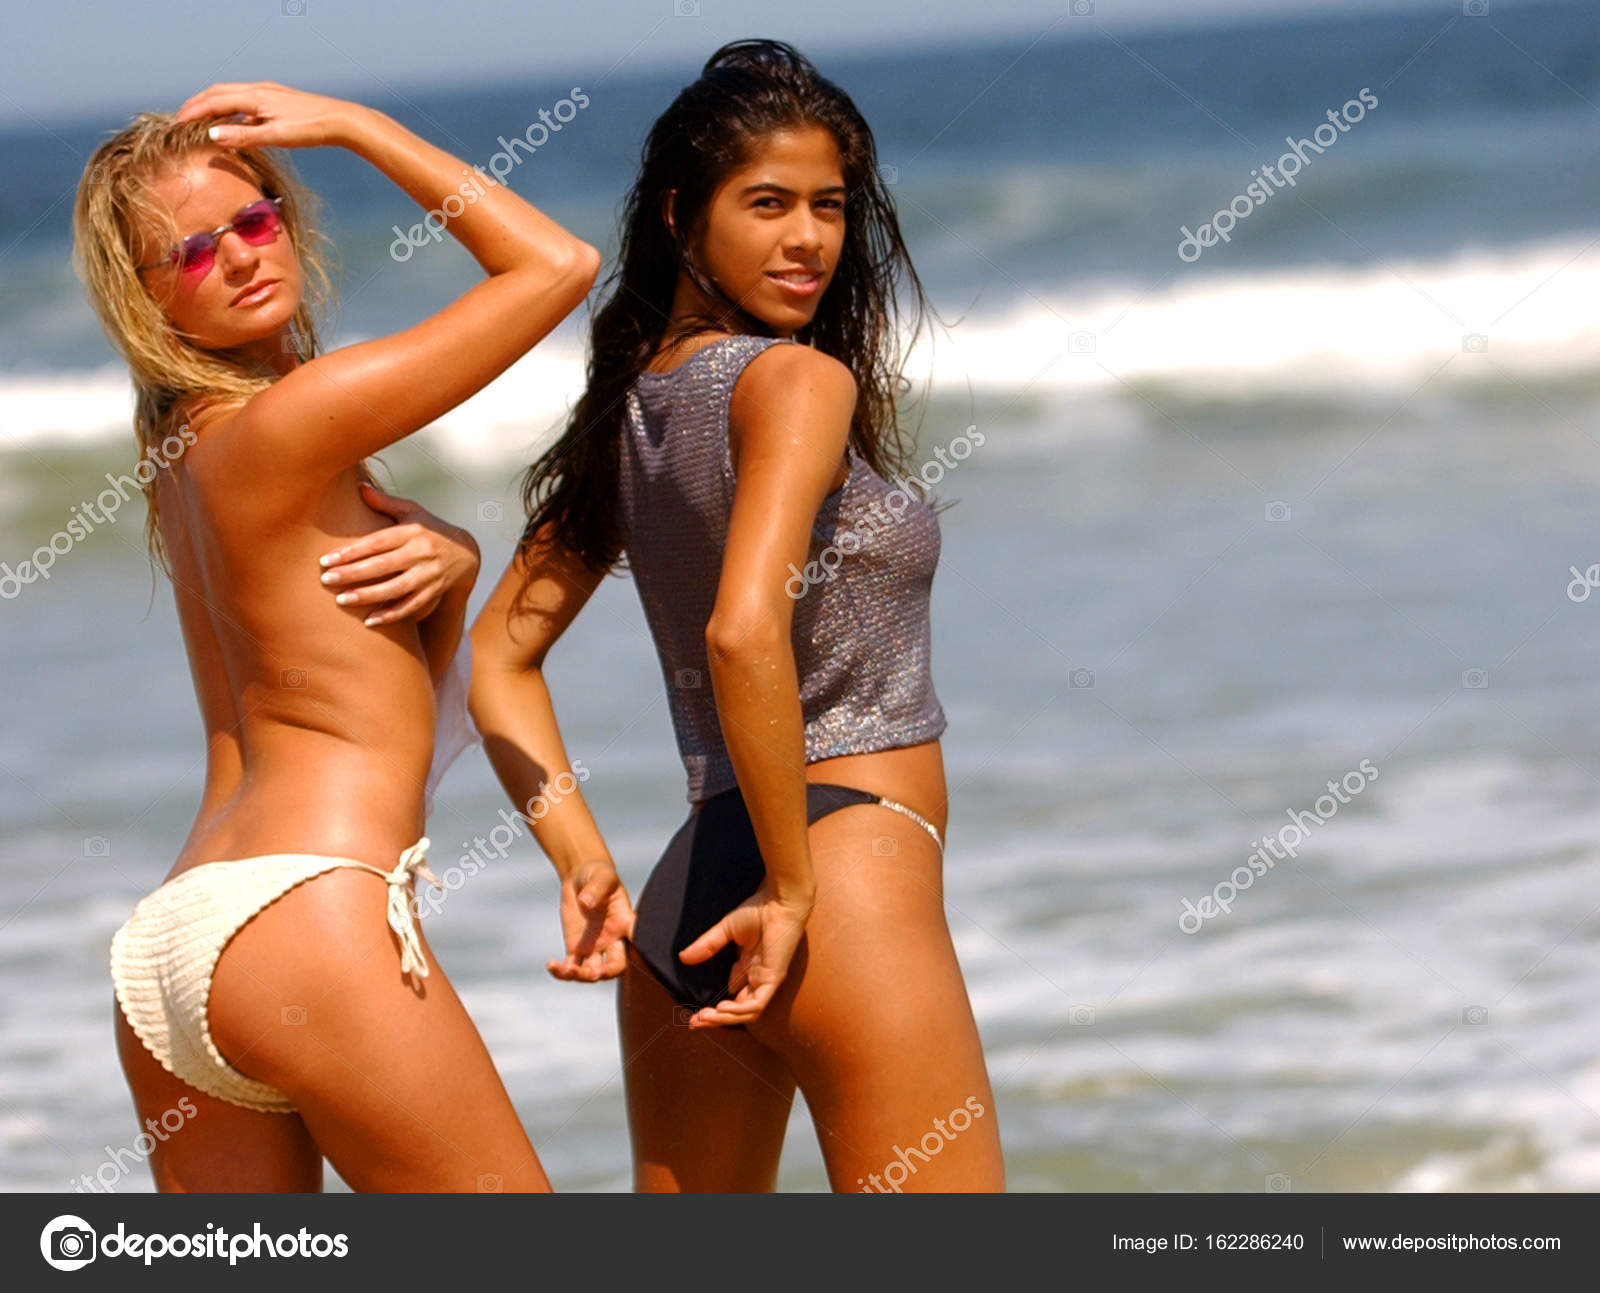 sharon lee wild sex on the beach